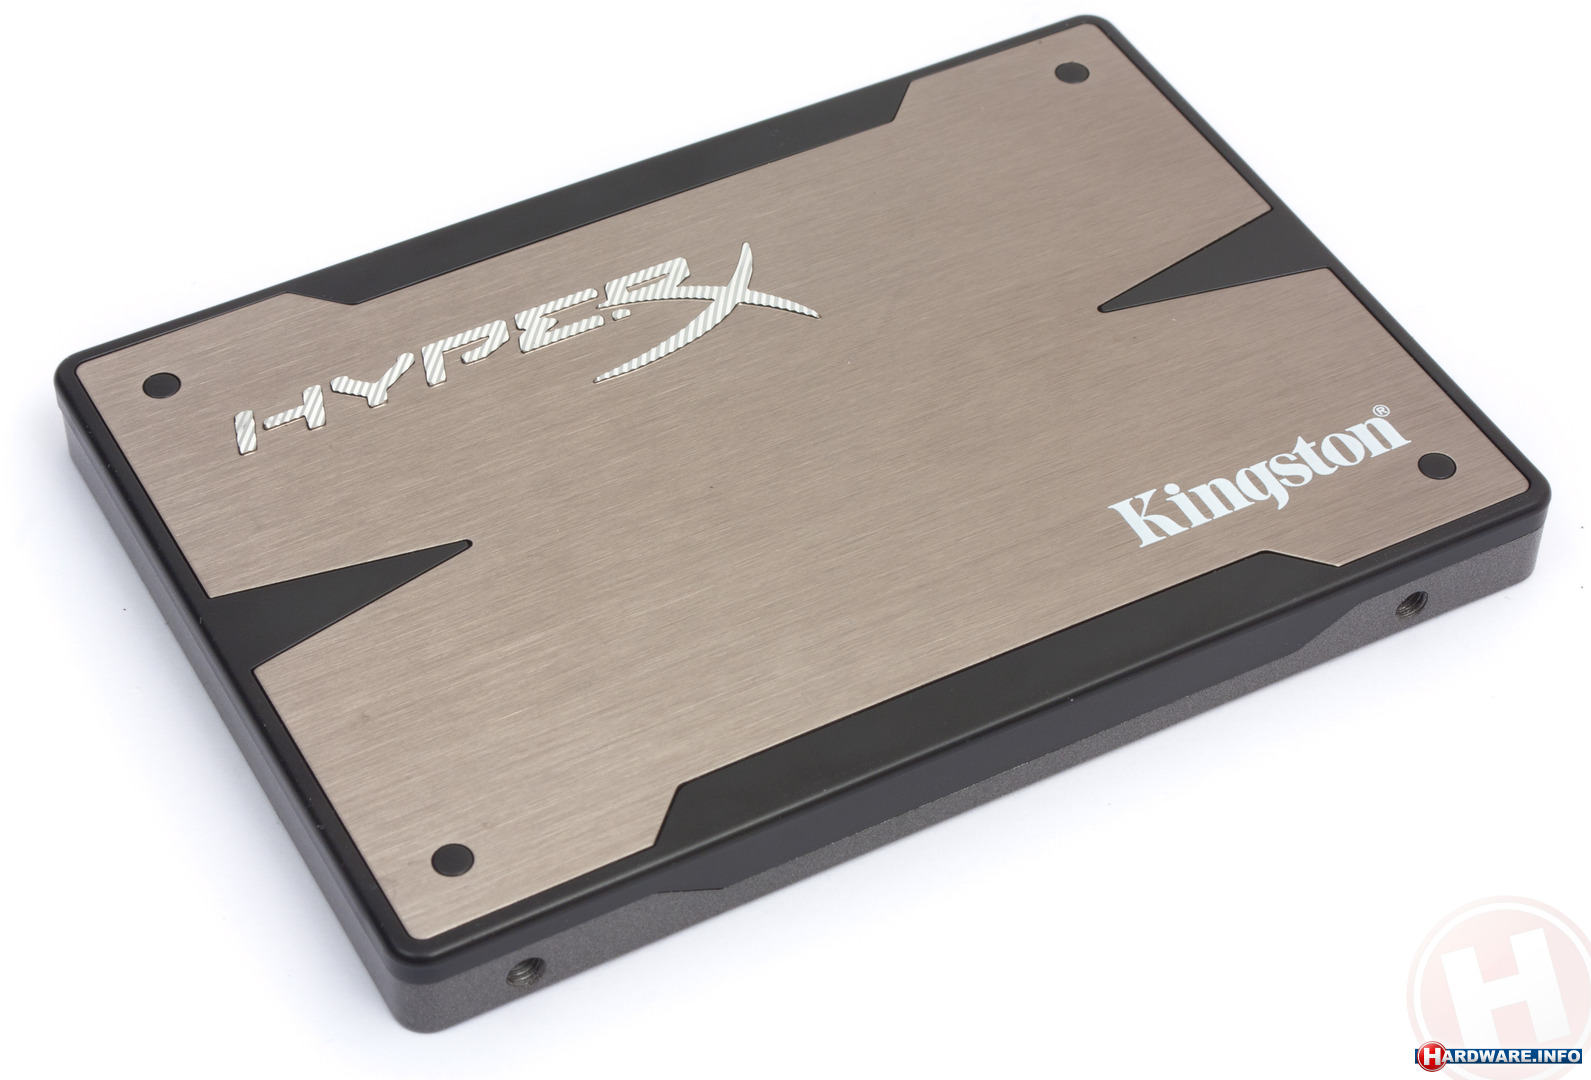 Lot Induceren school Kingston HyperX 3K 120GB (bundle kit) ssd - Hardware Info